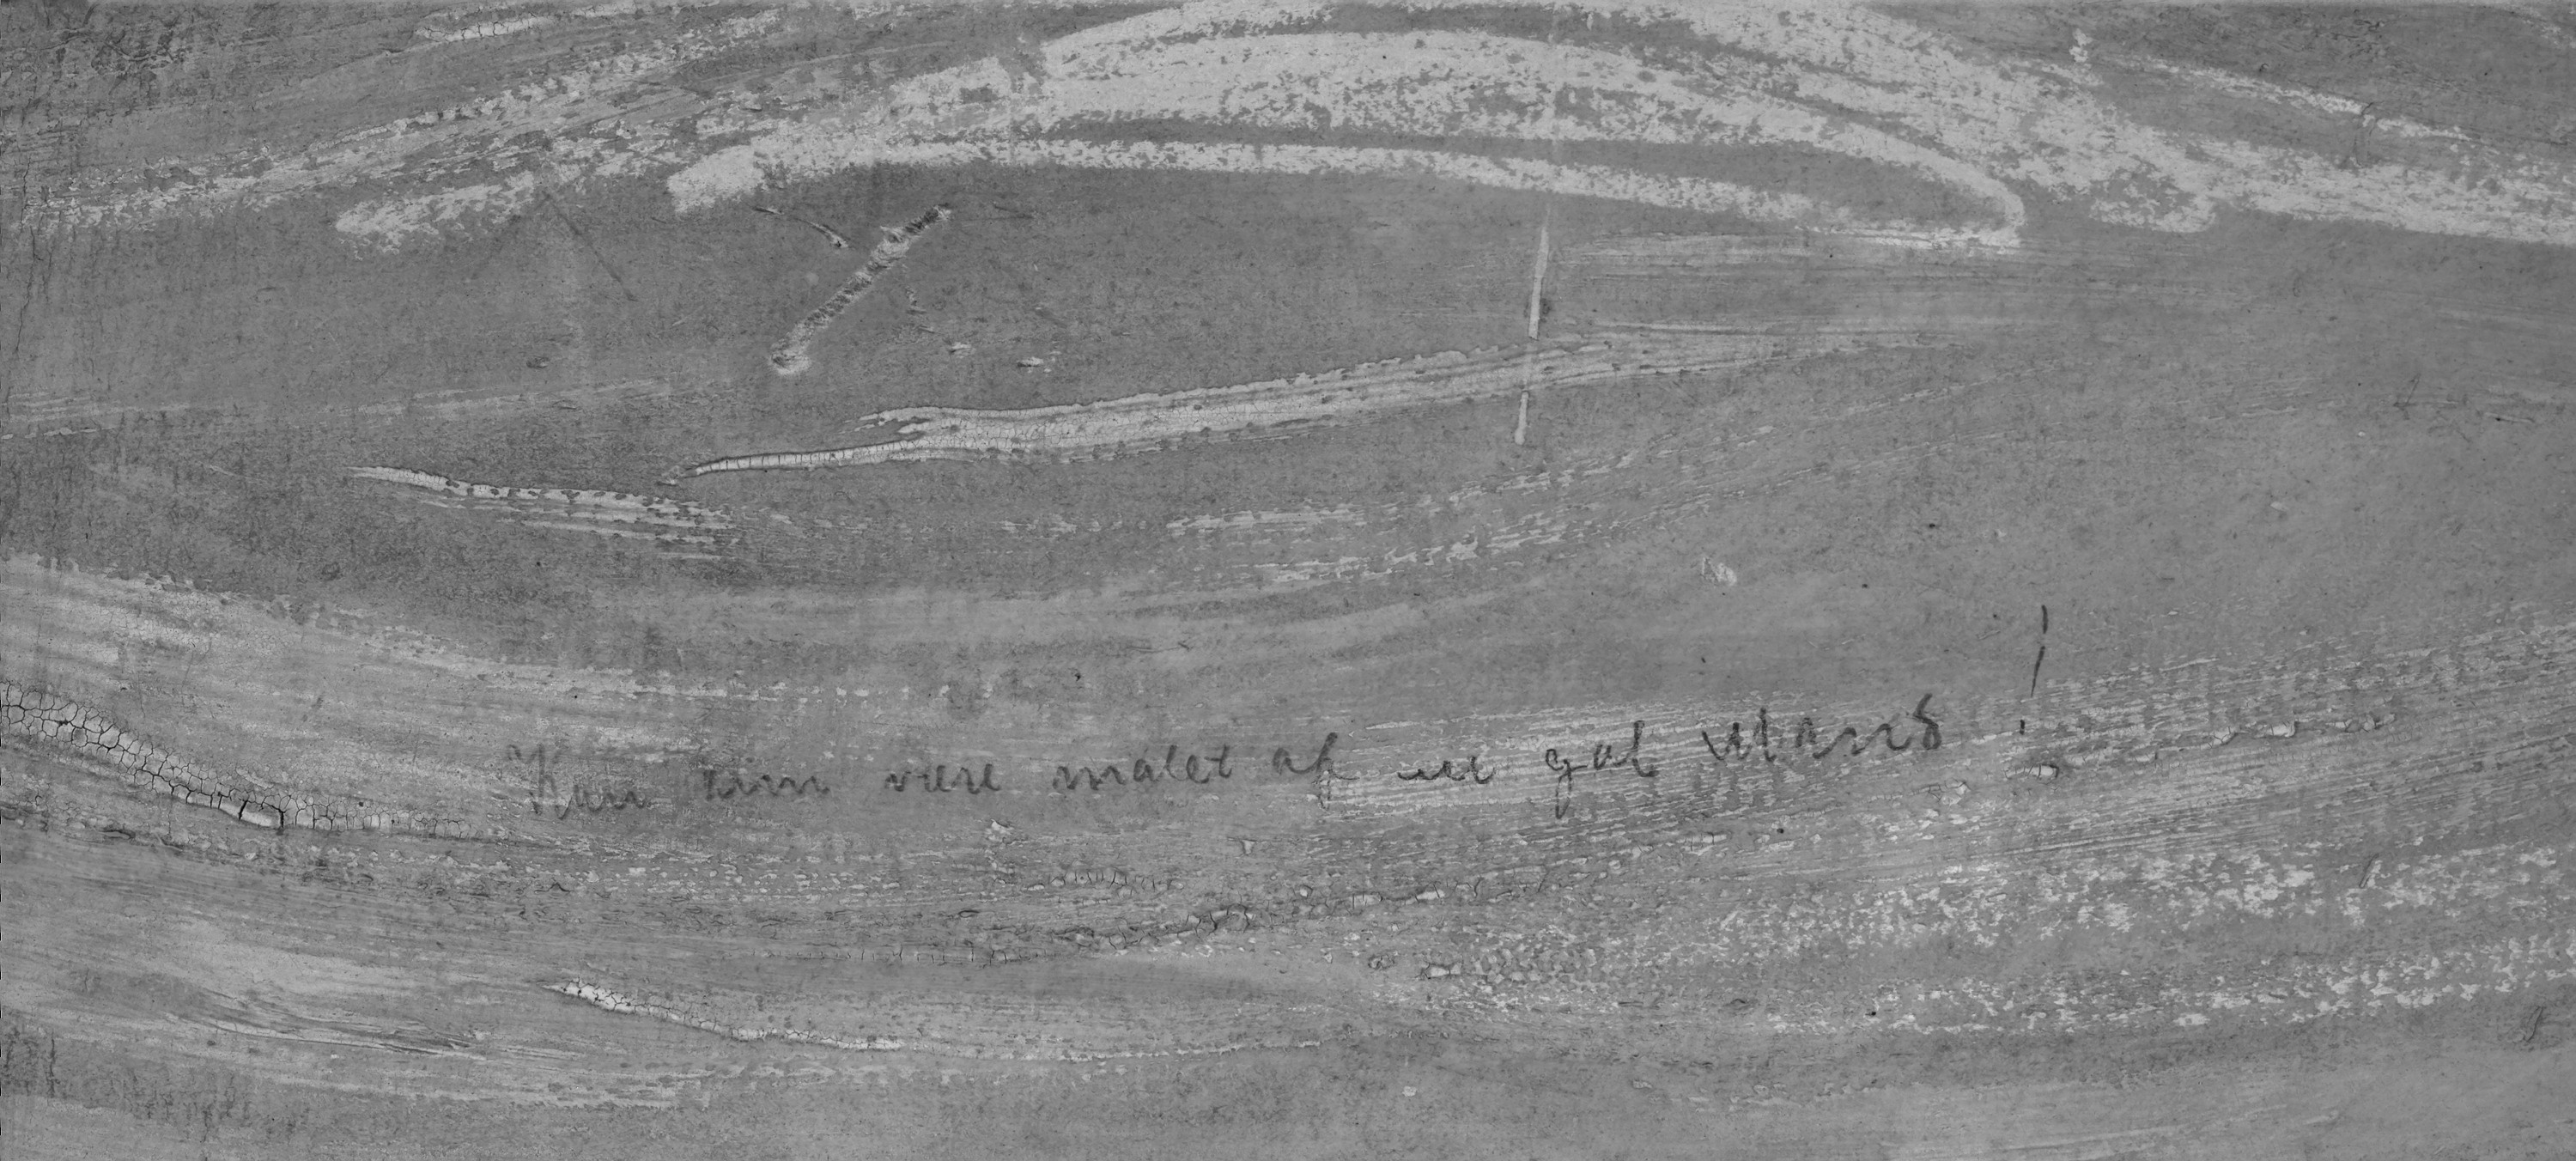 Quase invisível a olho nu, frase escrita a lápis no canto superior esquerdo da obra – “Só podia ter sido pintado por um homem louco!” – foi escrita pelo próprio Edward Munch (Foto: Borre Hostland/The National Museum)